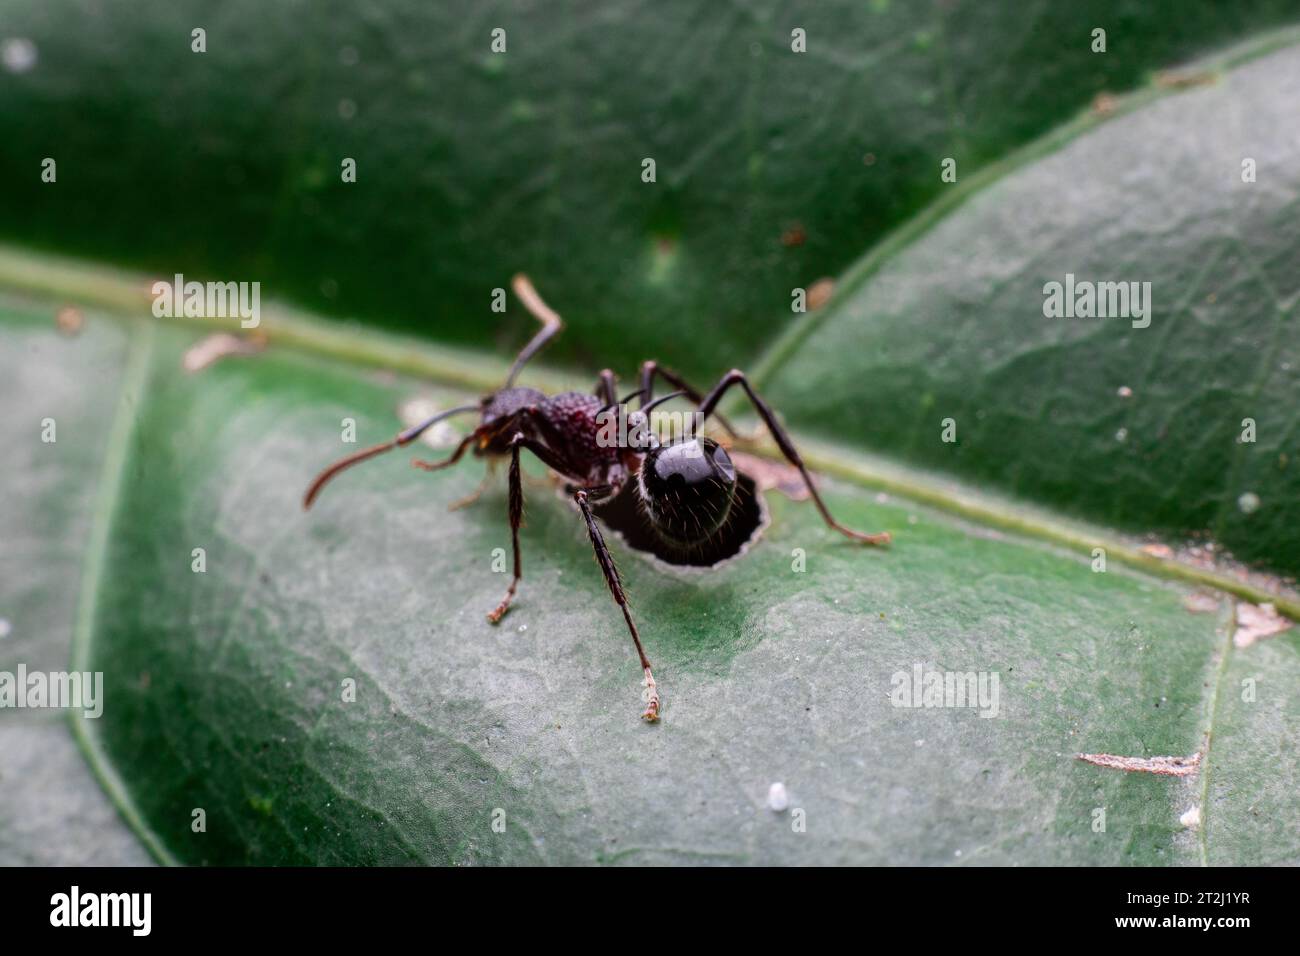 Allein Polyrhachis Ameise auf einem grünen Blatt Stockfoto